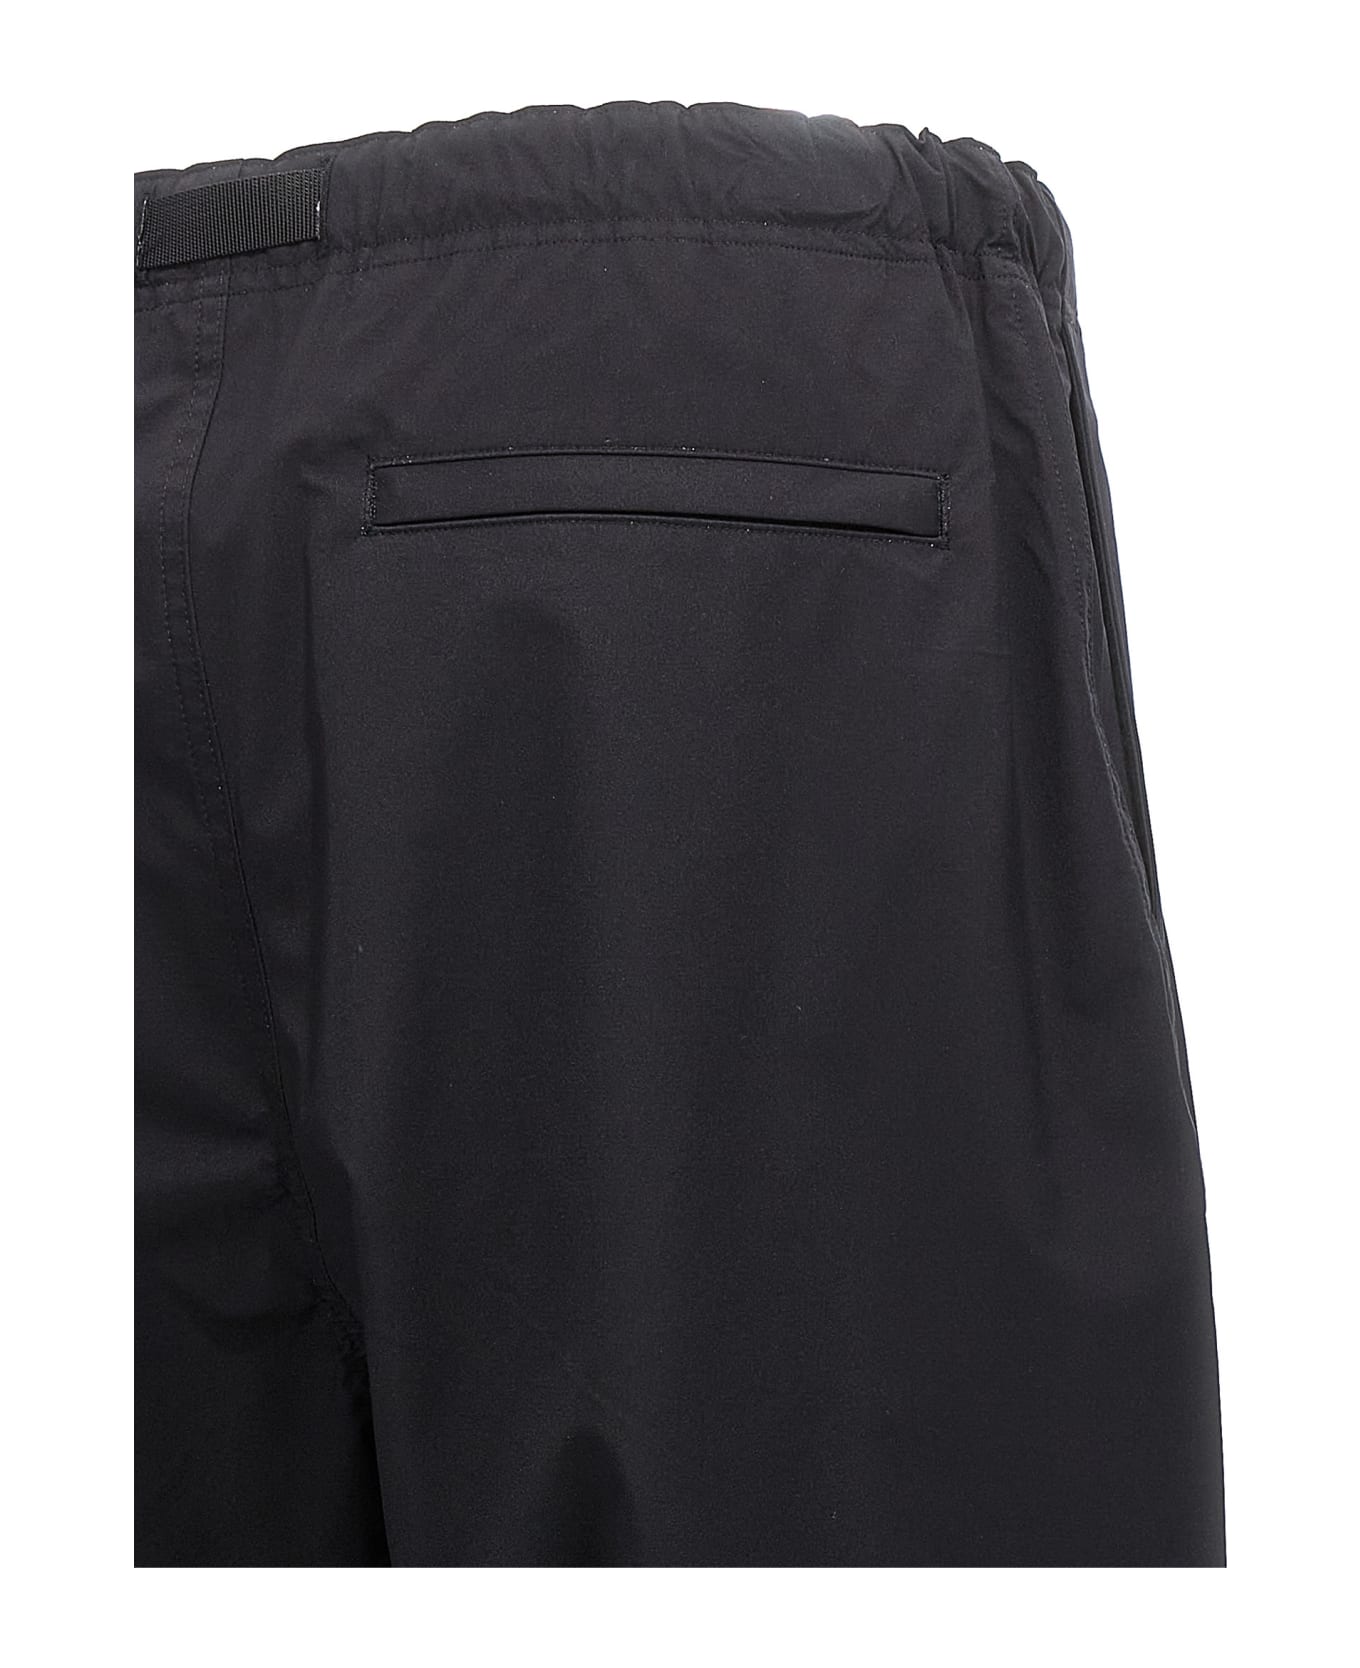 Comme des Garçons Homme Technical Fabric Trousers Vintage - Black  